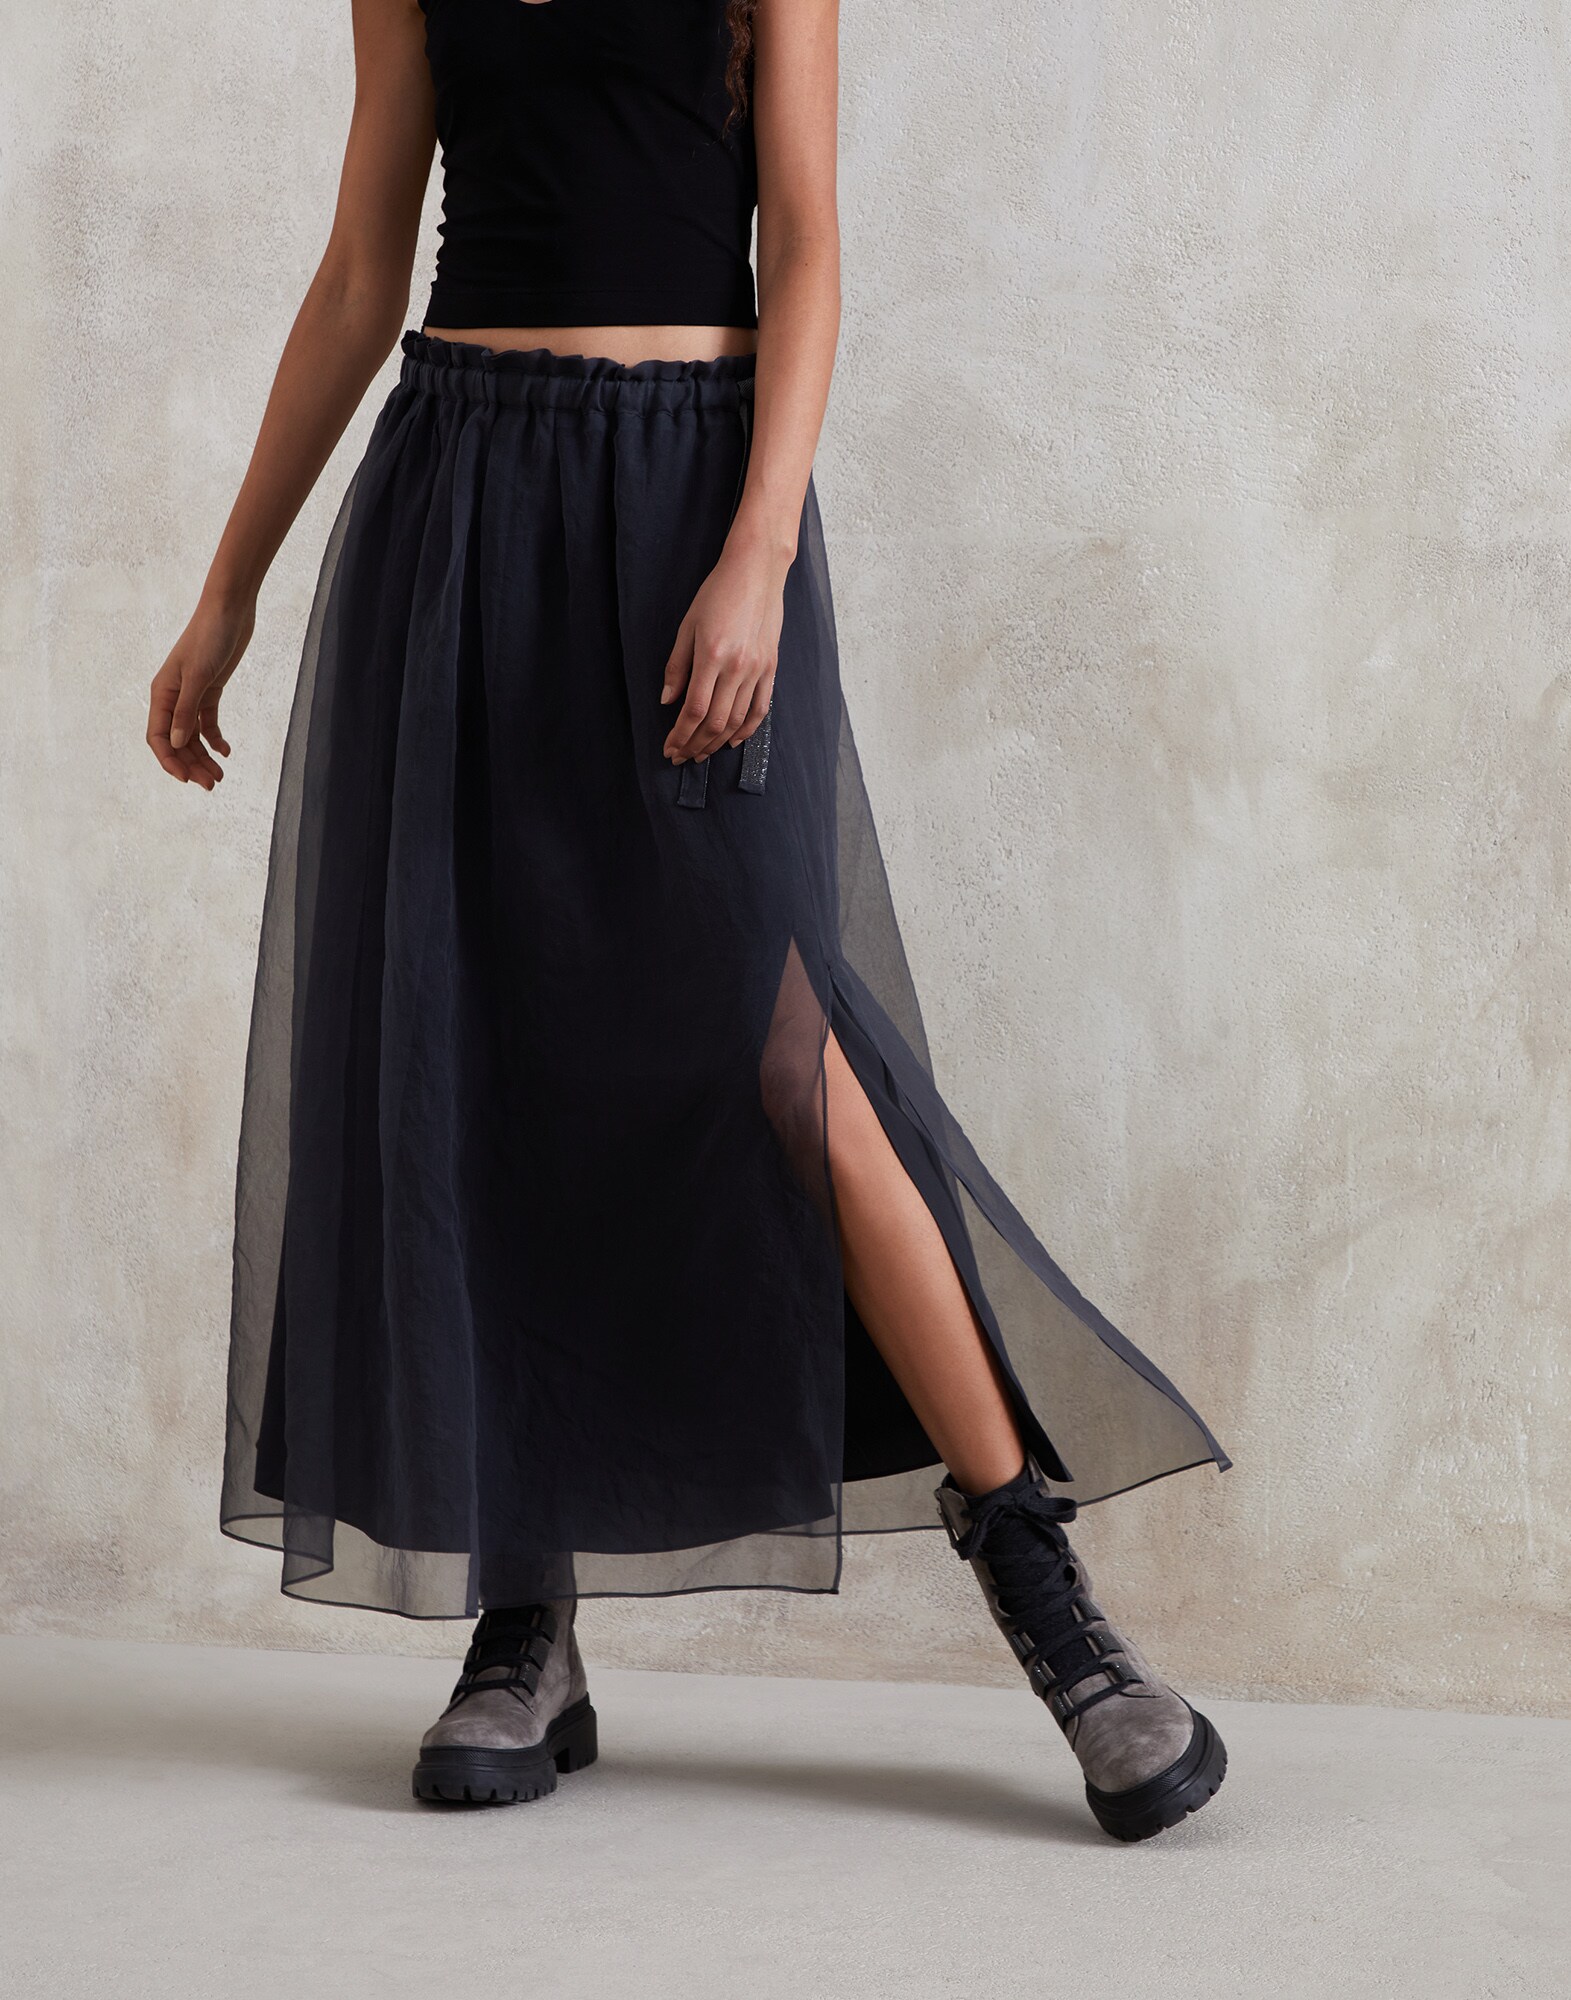 Full skirt